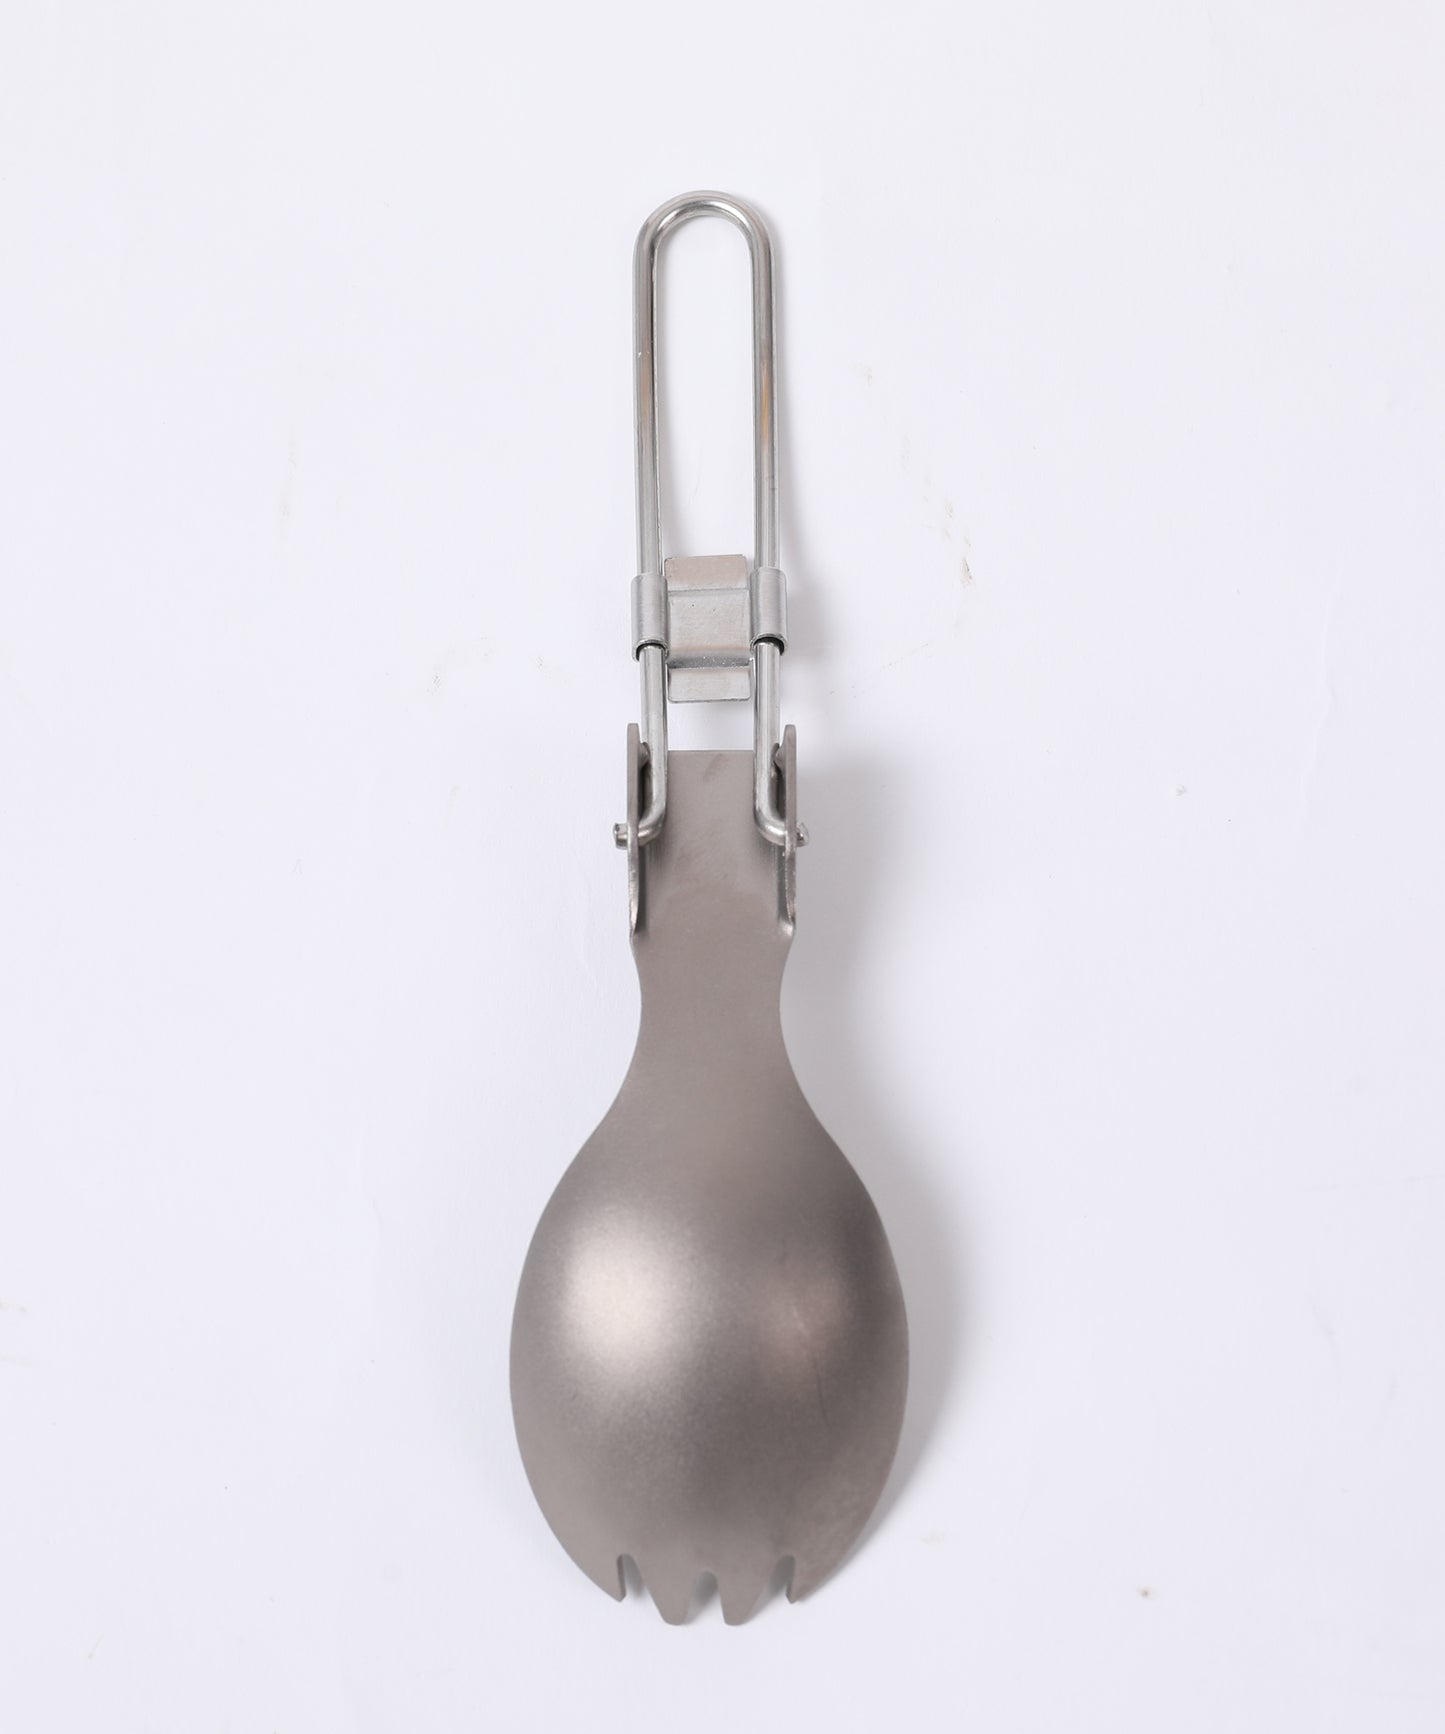 【 Titanium FD Spoon 】 チタニウムFDスプーン チタン製スプーン